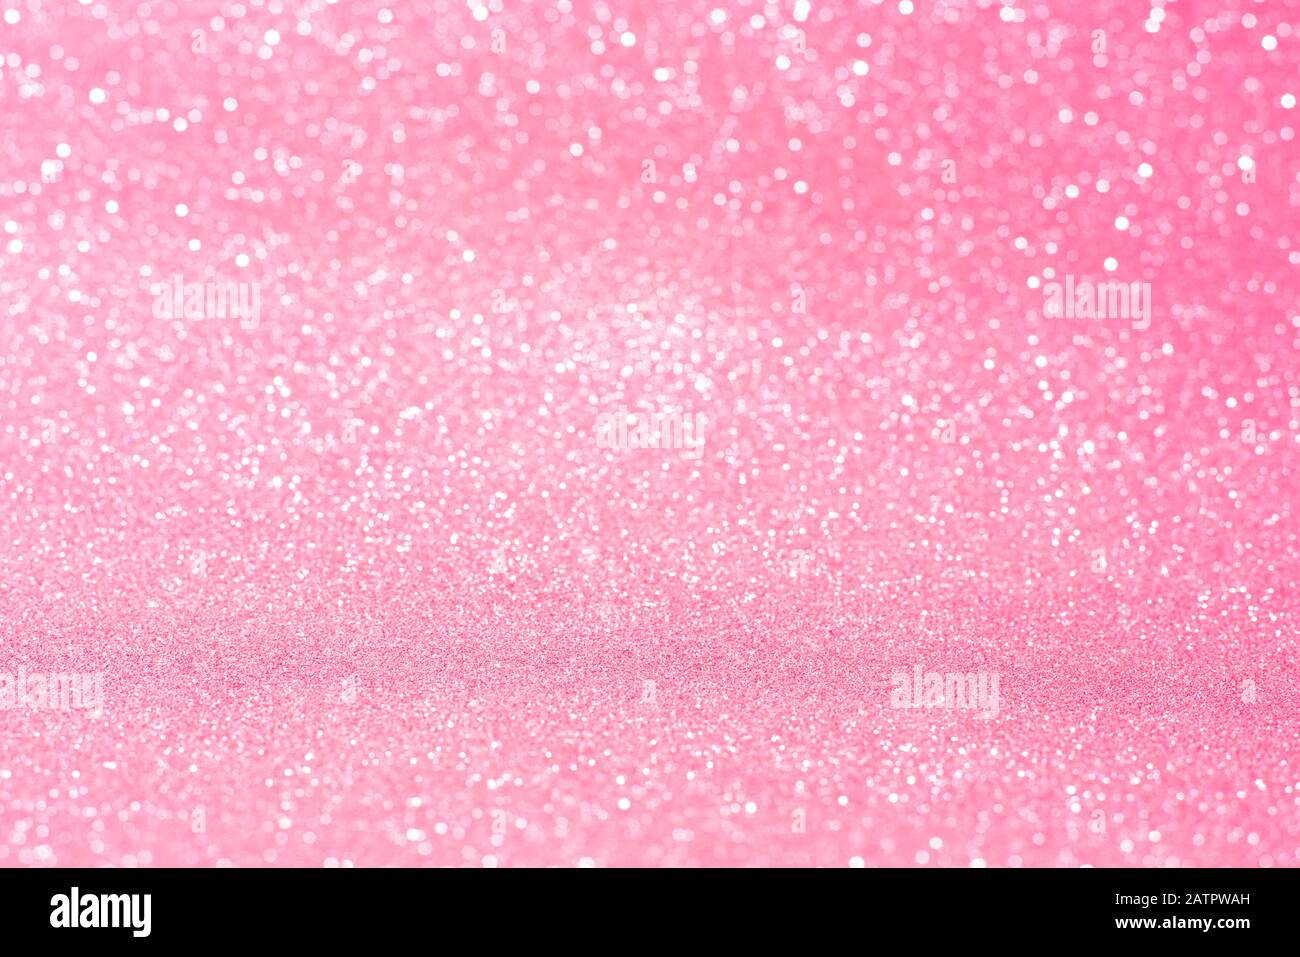 Images pink sparkles Pink Glitter